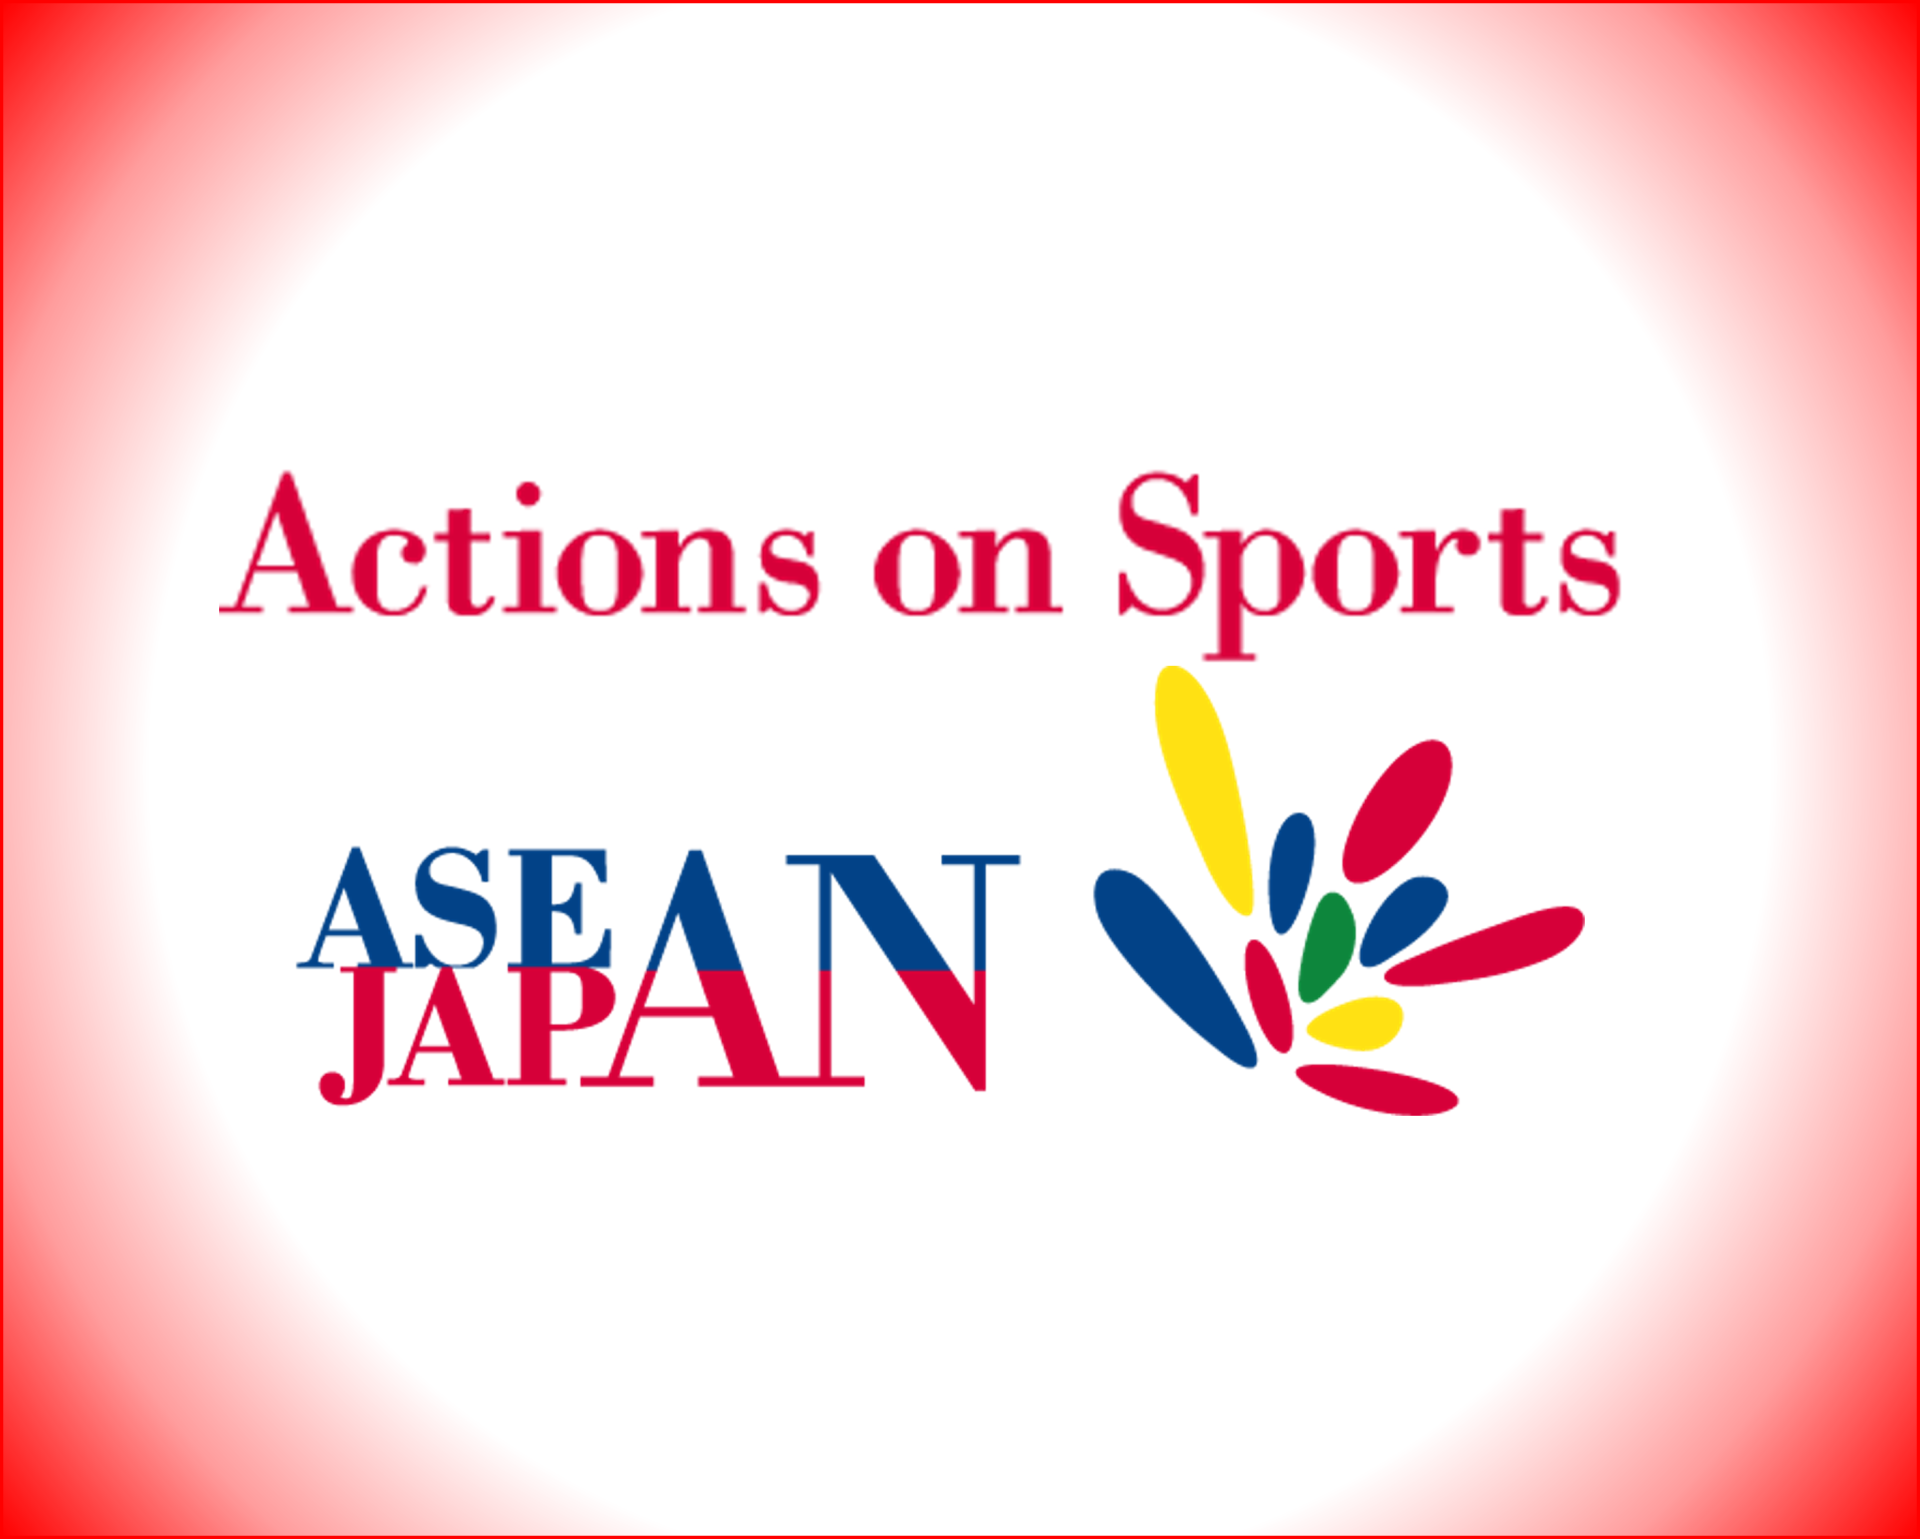 Japan-ASEAN Symposium will be held